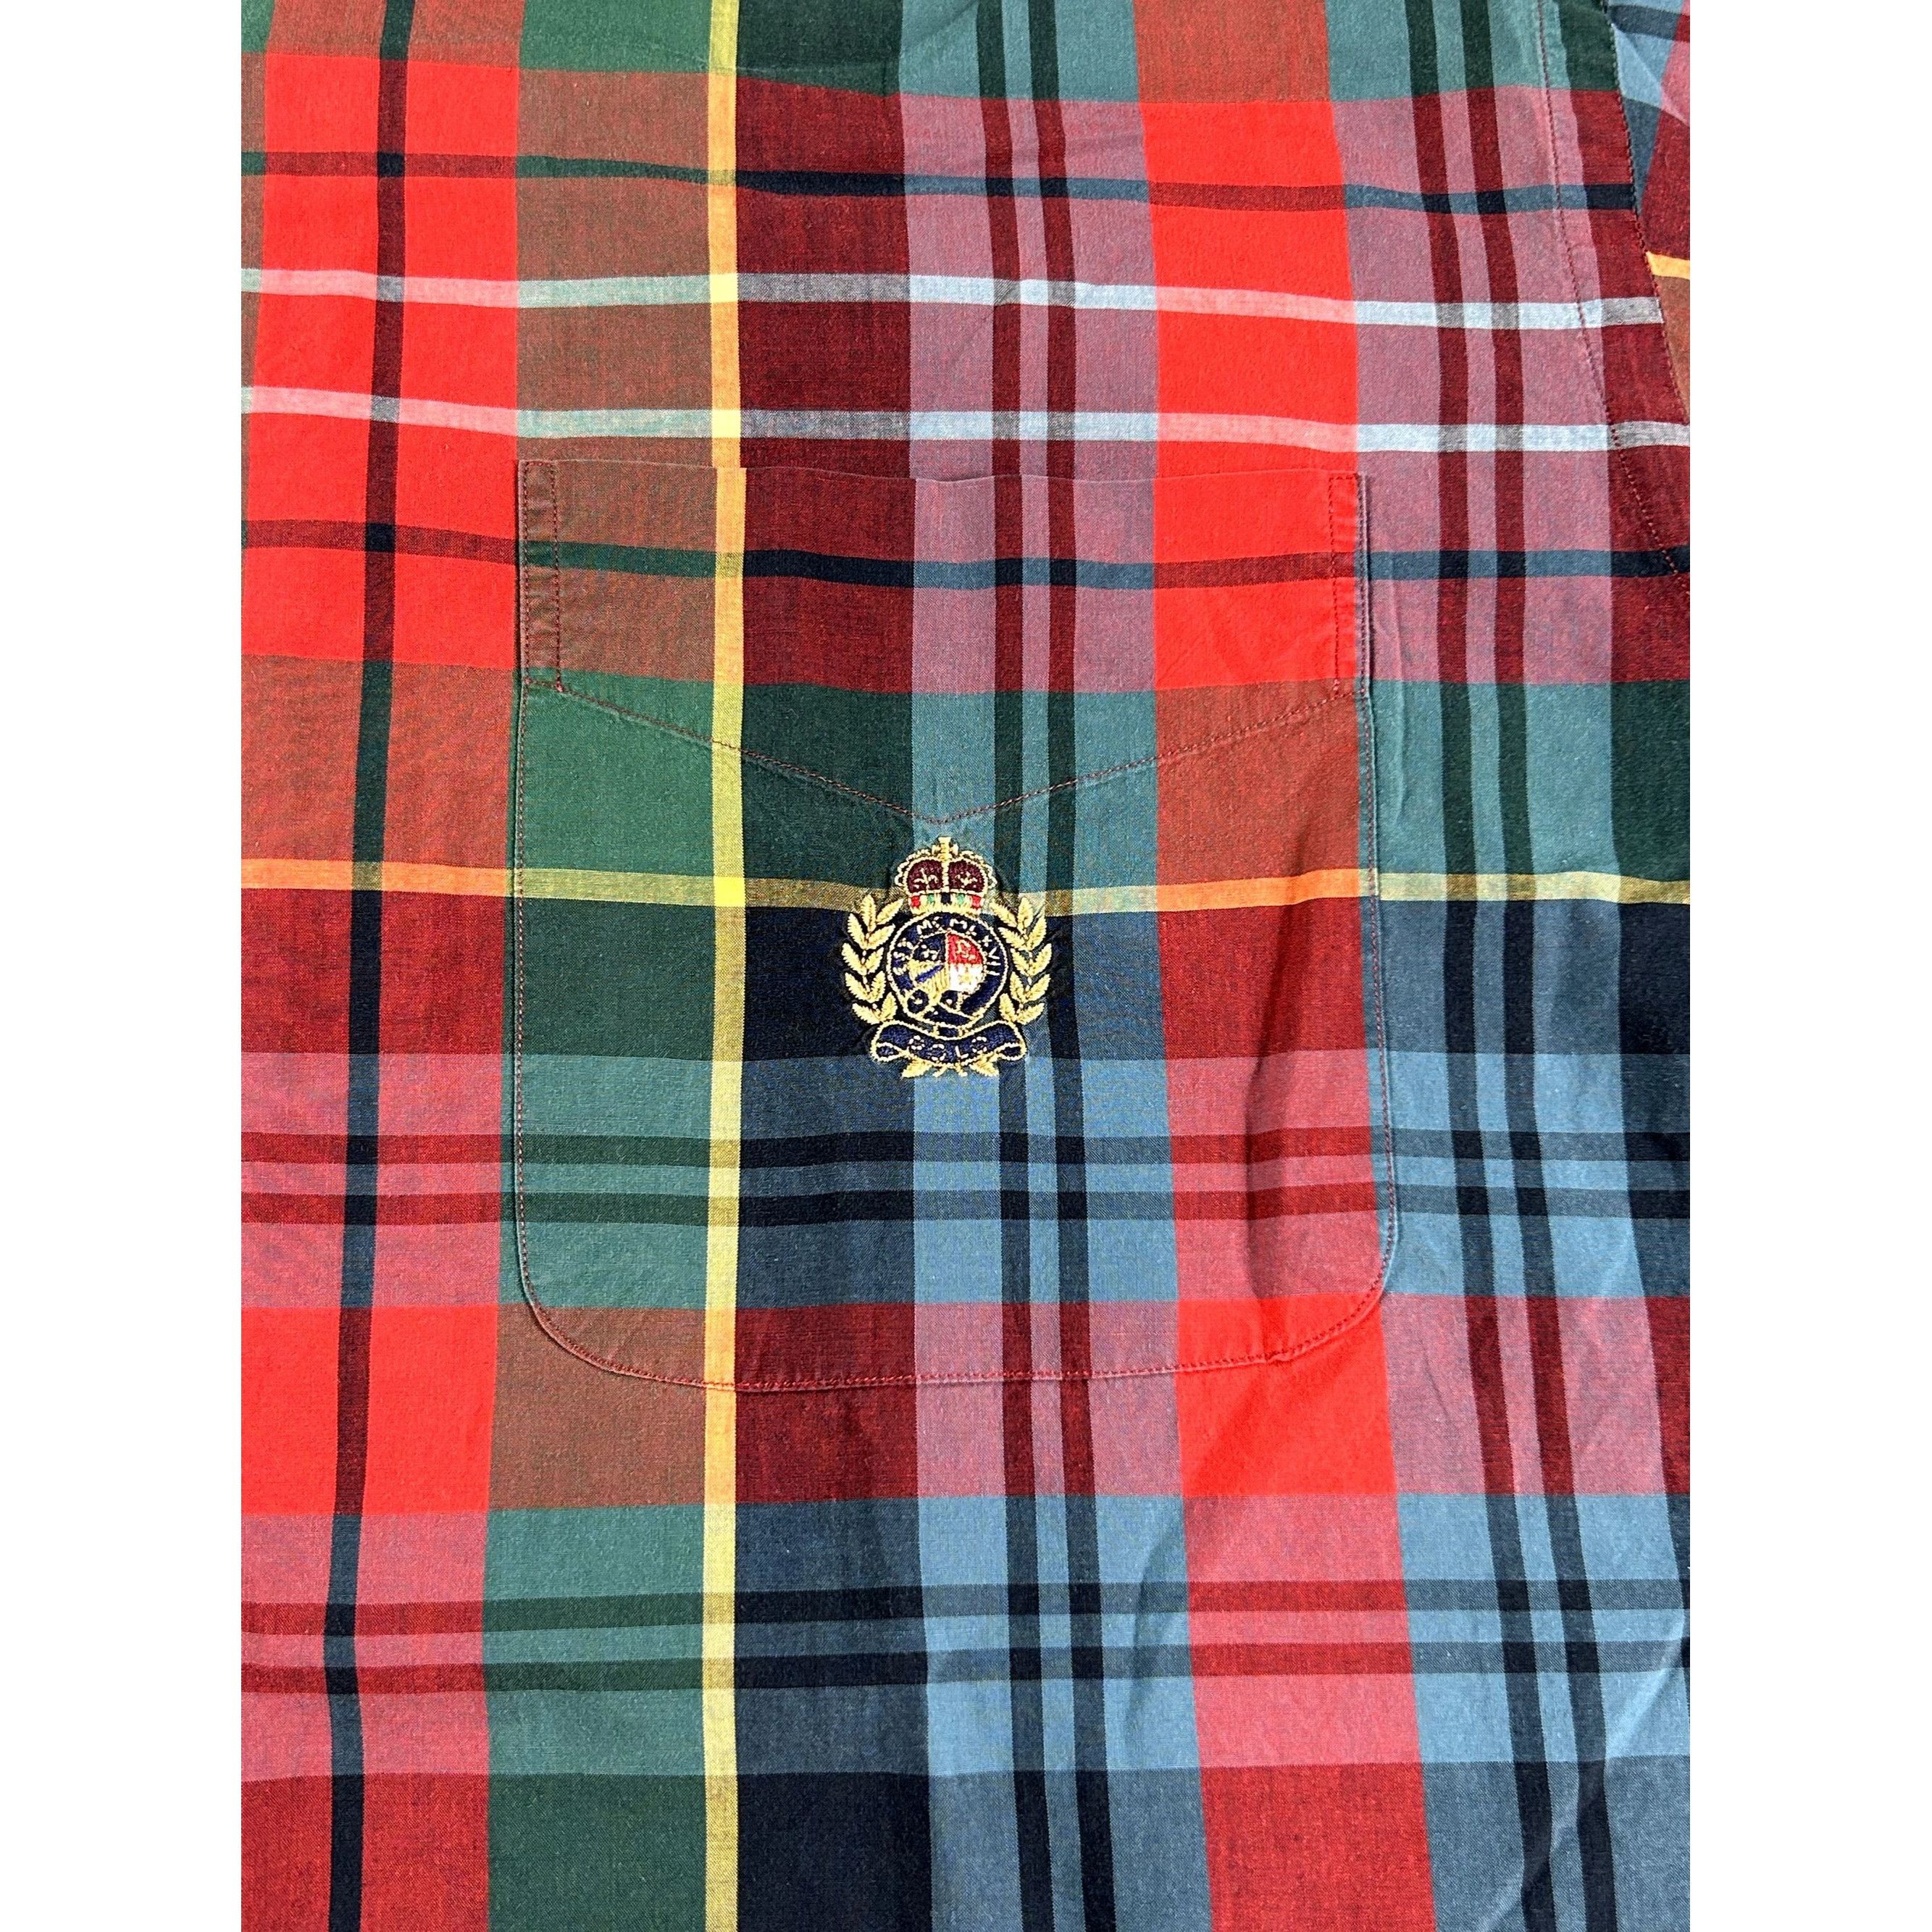 Ralph Lauren Ralph Lauren Red & Green Plaid Long Sleeve Button Down Shirt Size US L / EU 52-54 / 3 - 3 Thumbnail